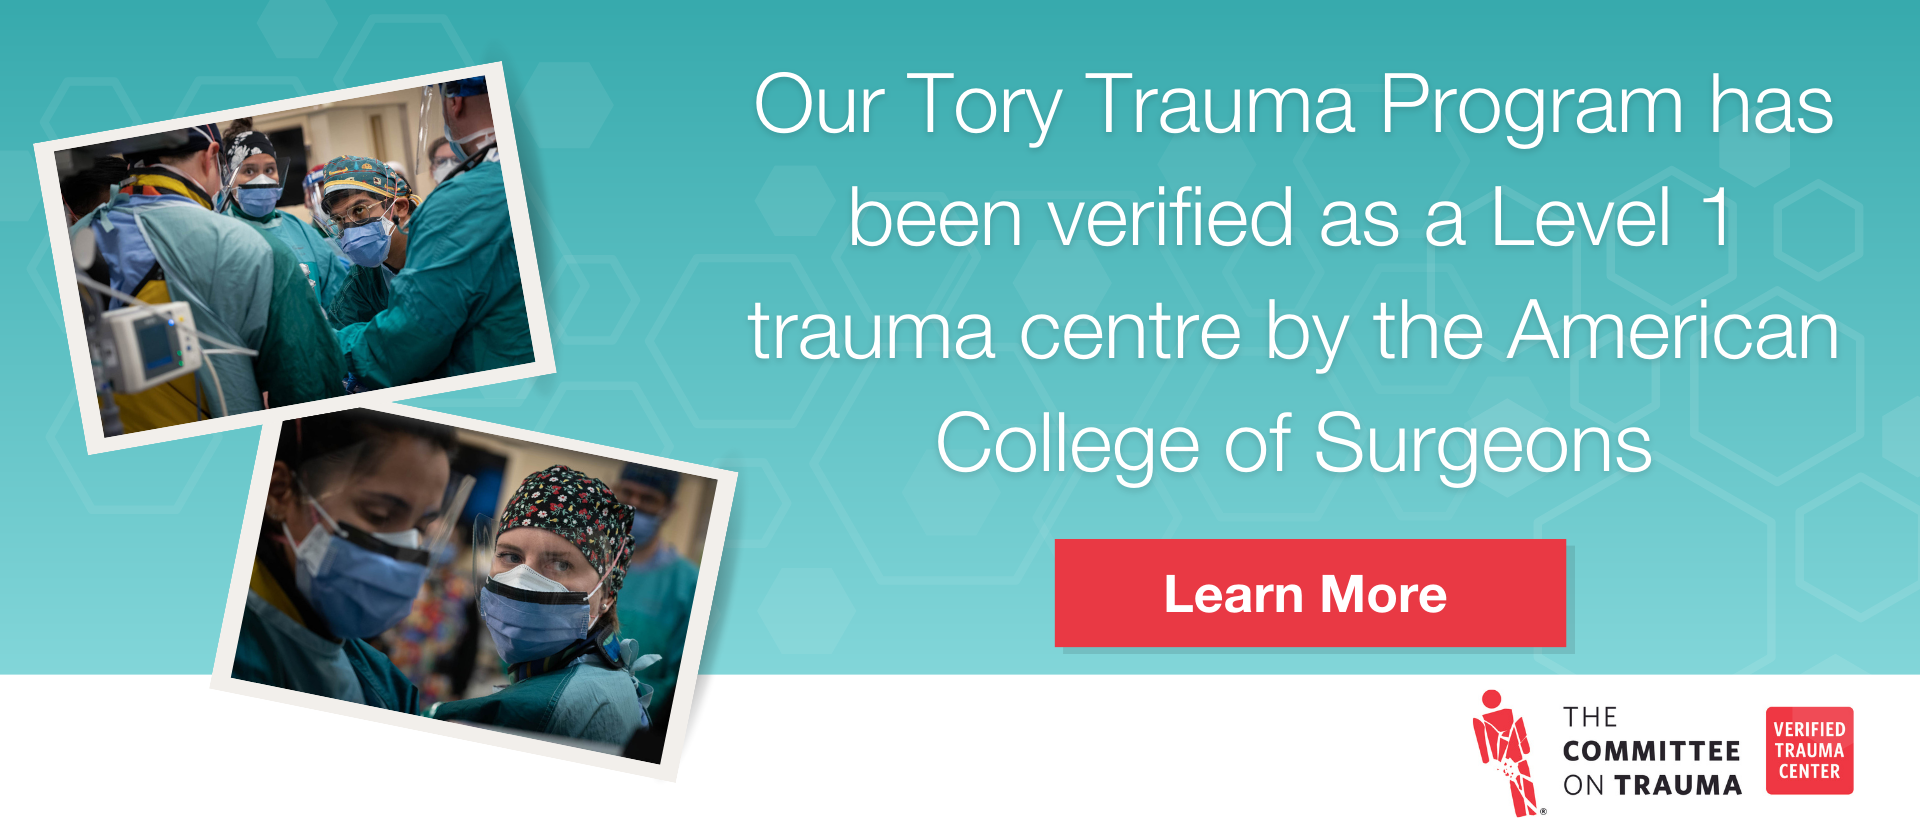 Tory Trauma Program verified as Level 1 Trauma Center